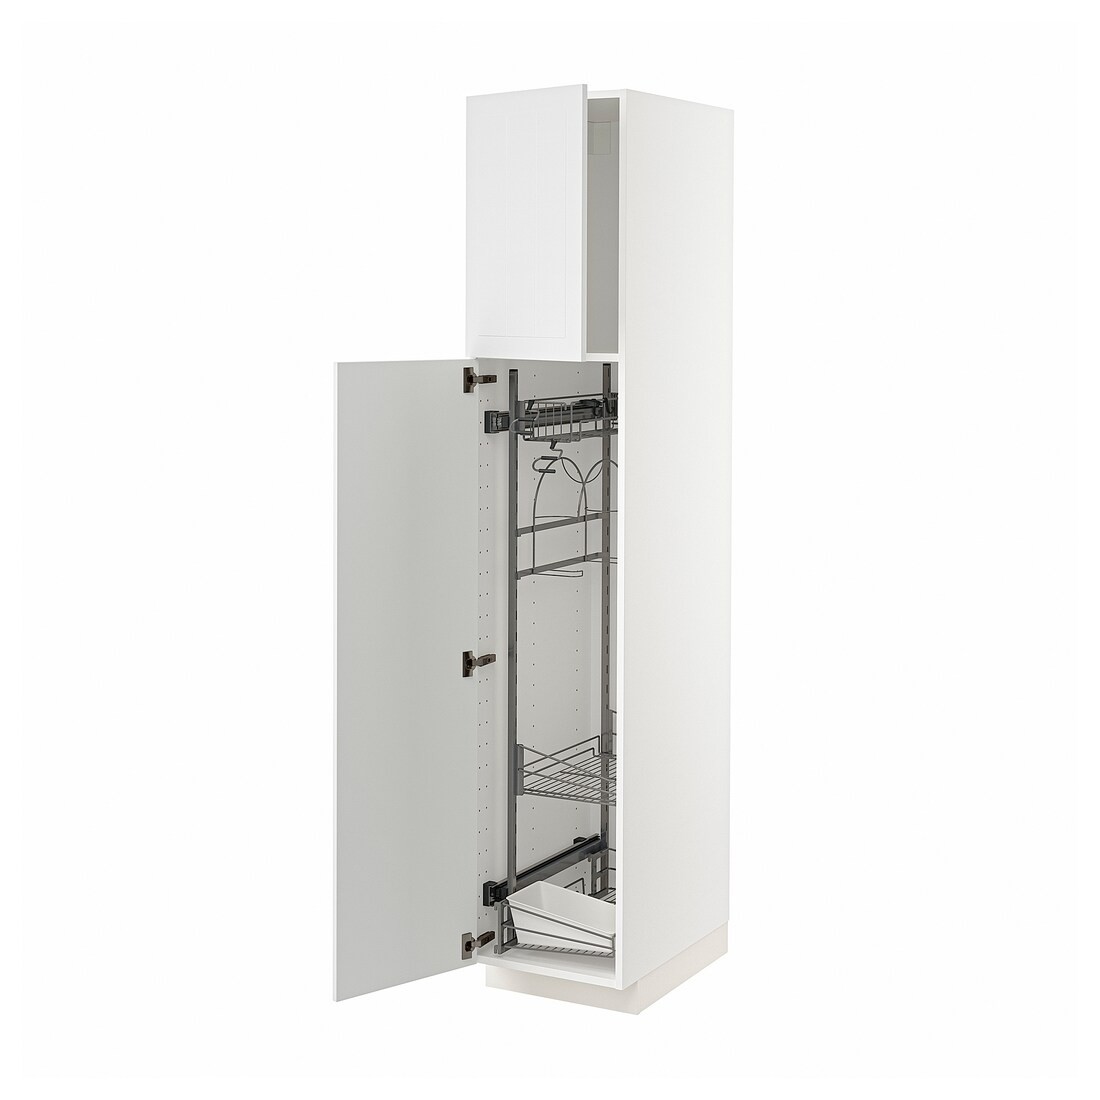 METOD МЕТОД Высокий шкаф с отделением для аксессуаров для уборки, белый / Stensund белый, 40x60x200 см